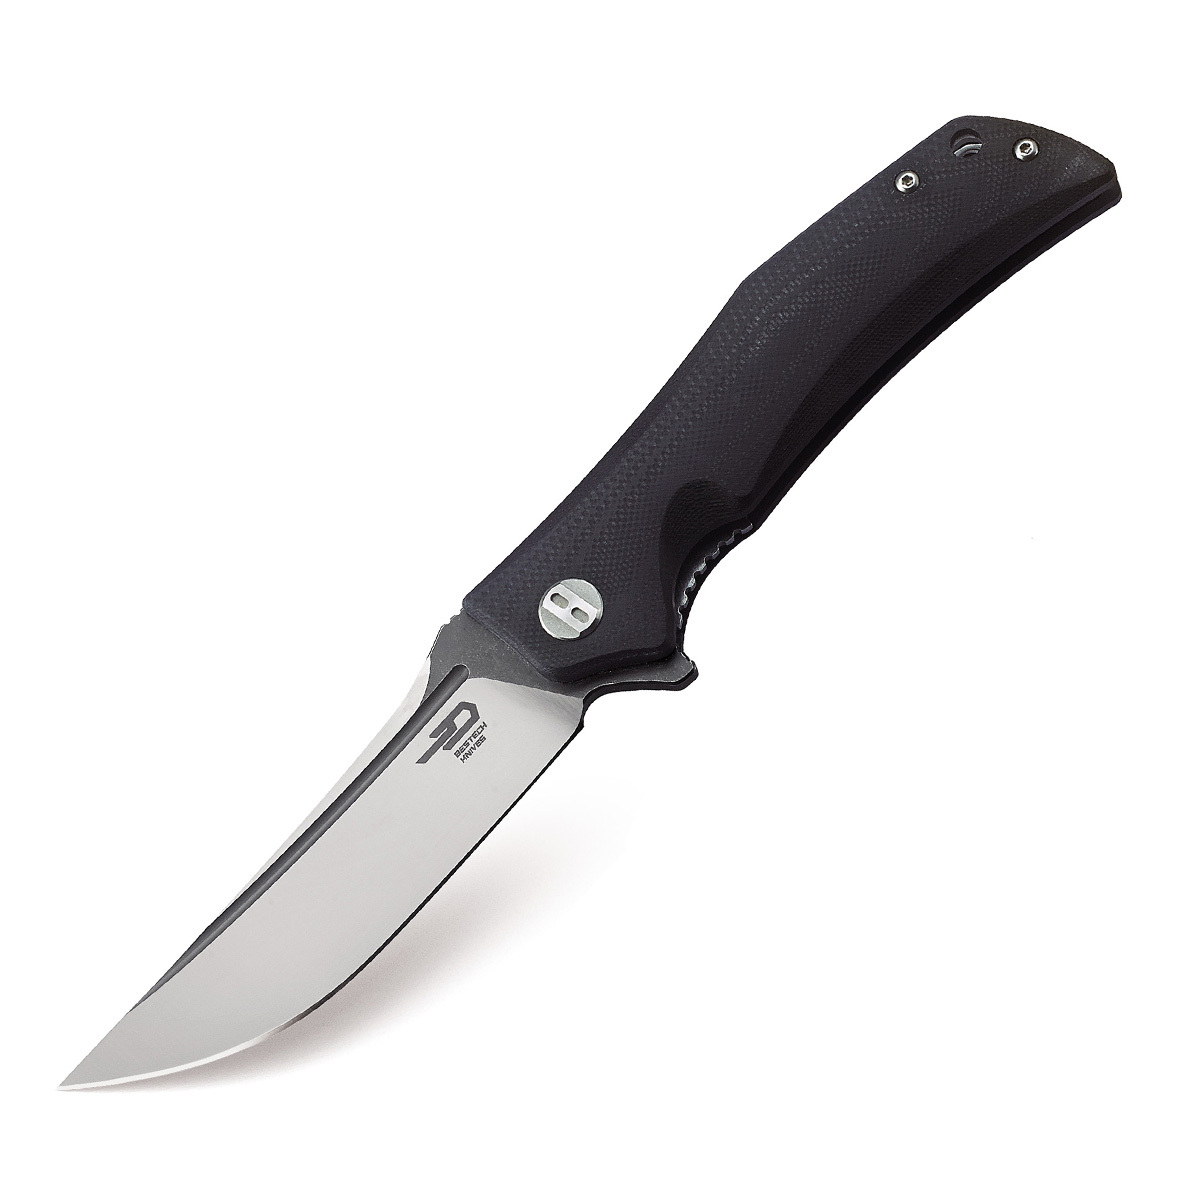 Складной нож Bestech Scimitar, сталь D2, рукоять G10 складной нож bestech bow tie bt1906a сталь m390